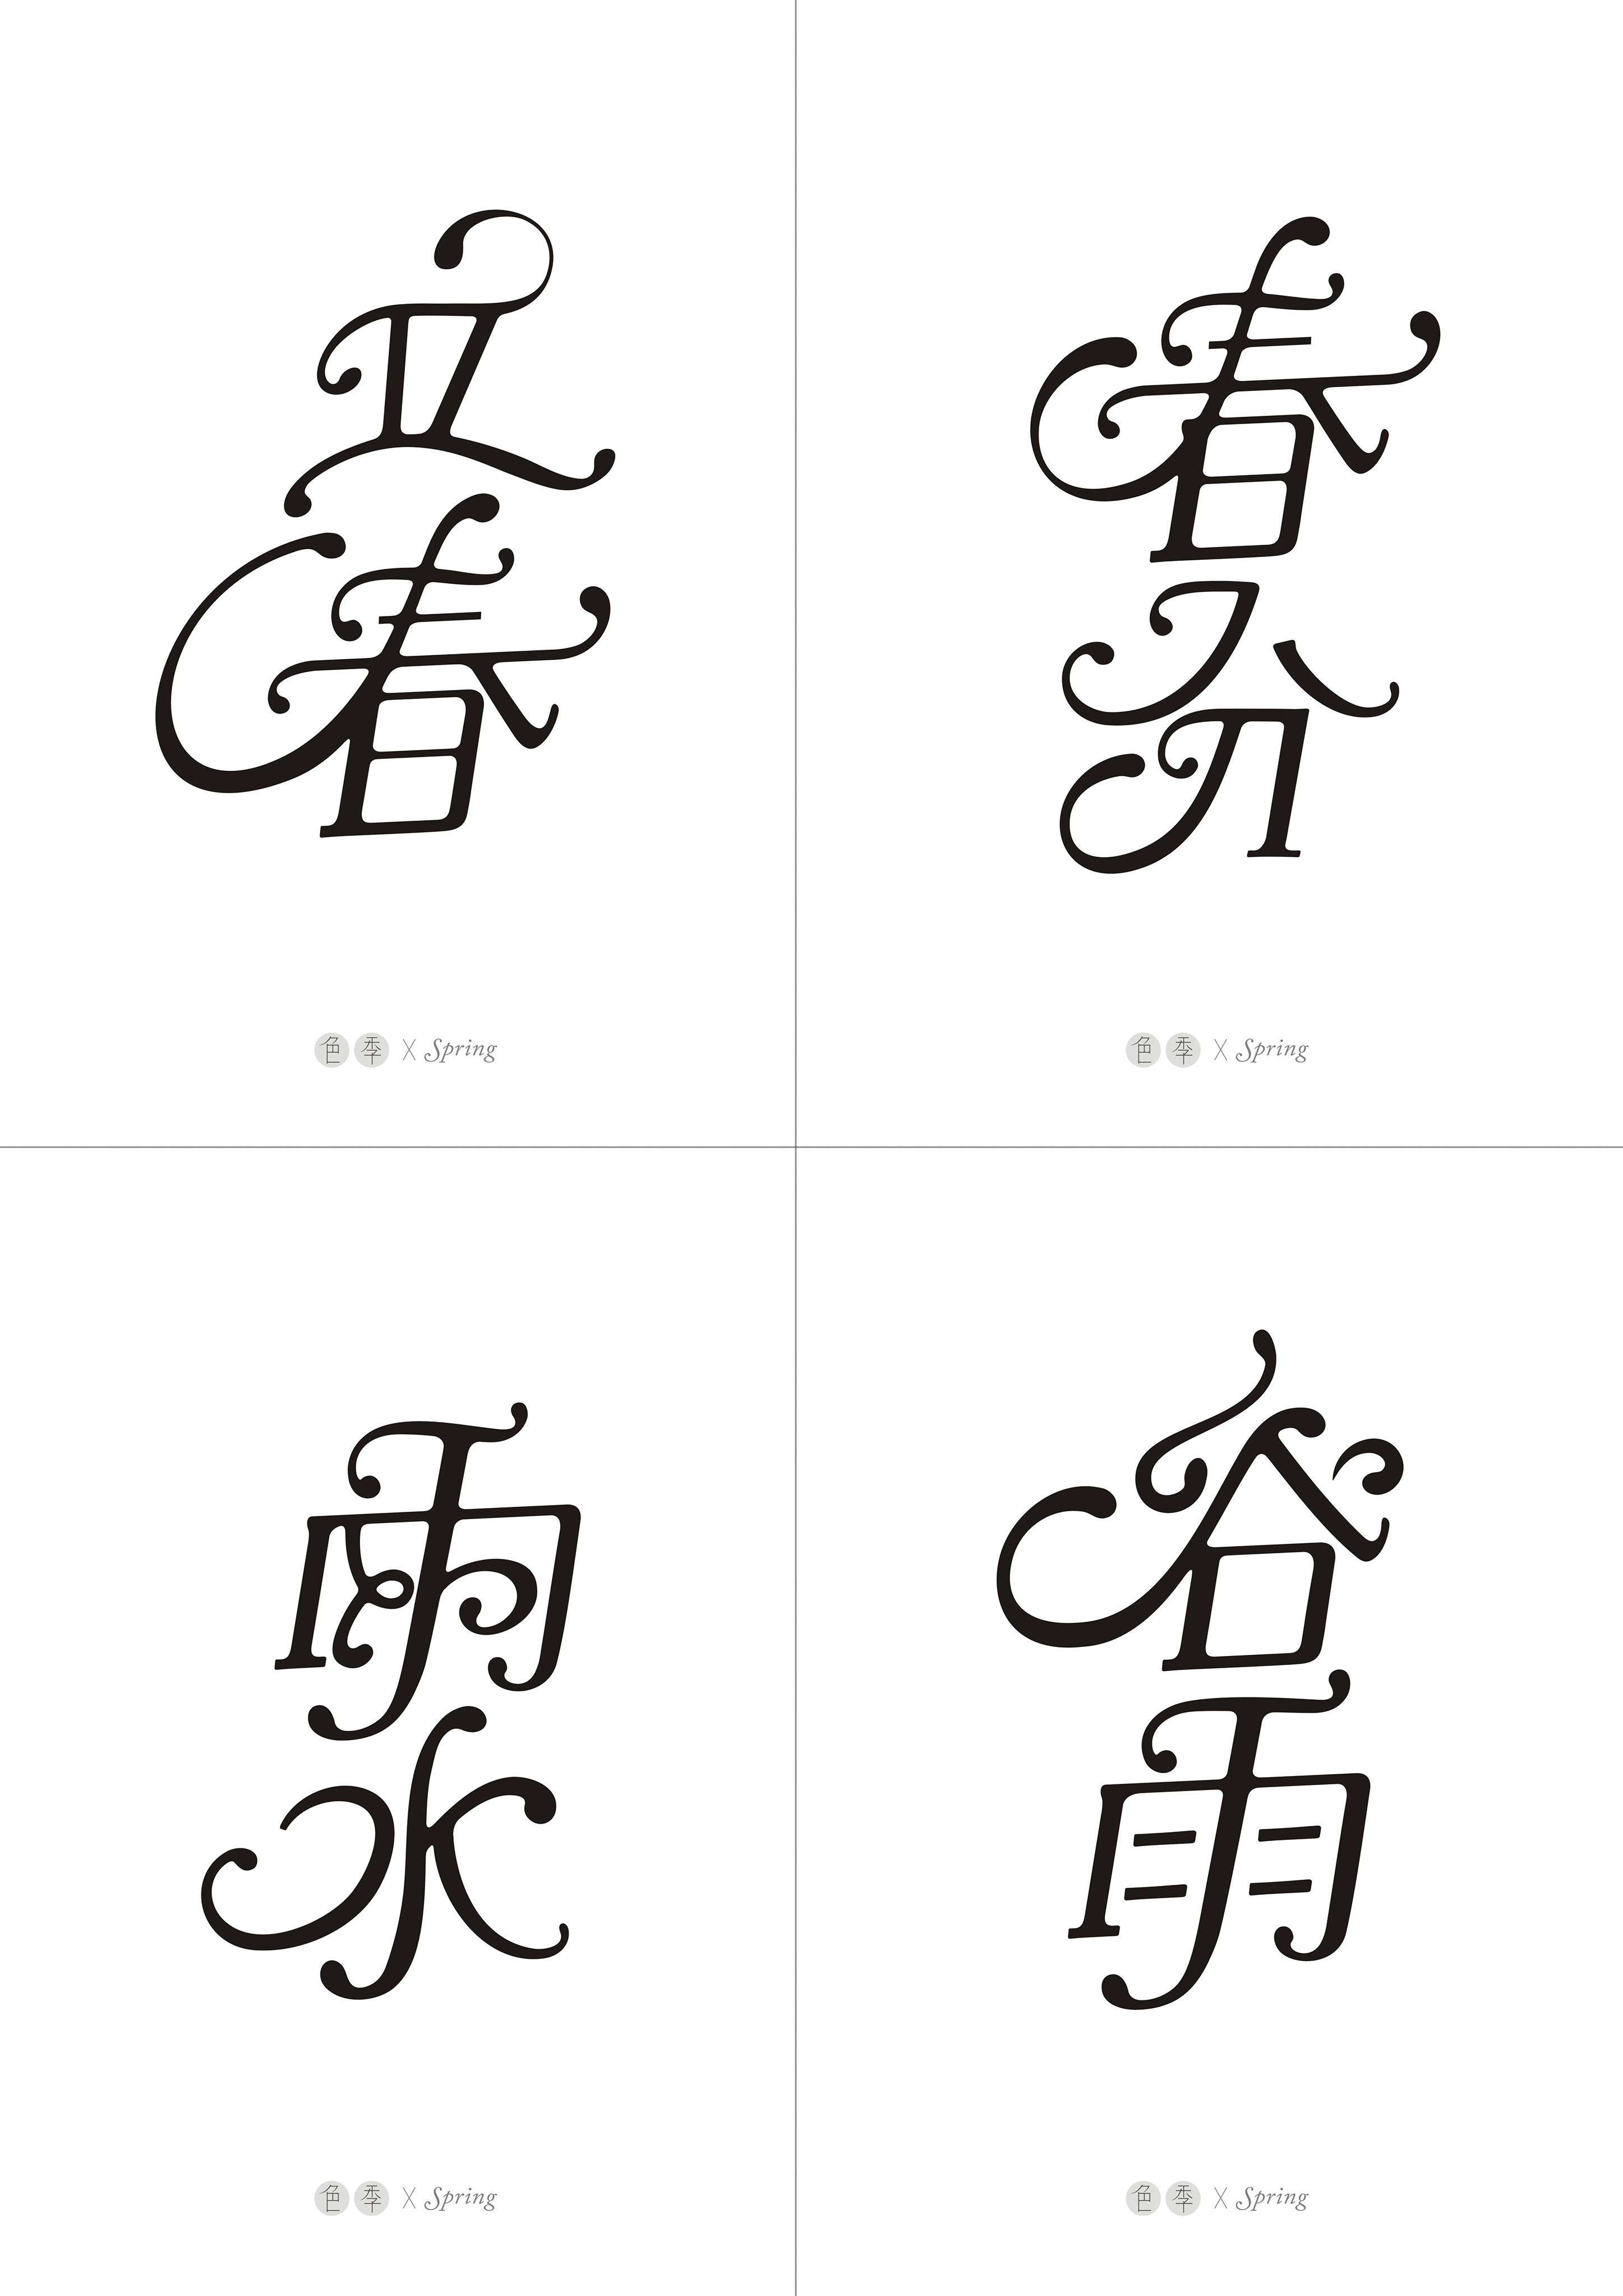 英文花体笔画与汉字结合尝试 二十四节气字体设计 古田路9号 品牌创意 版权保护平台